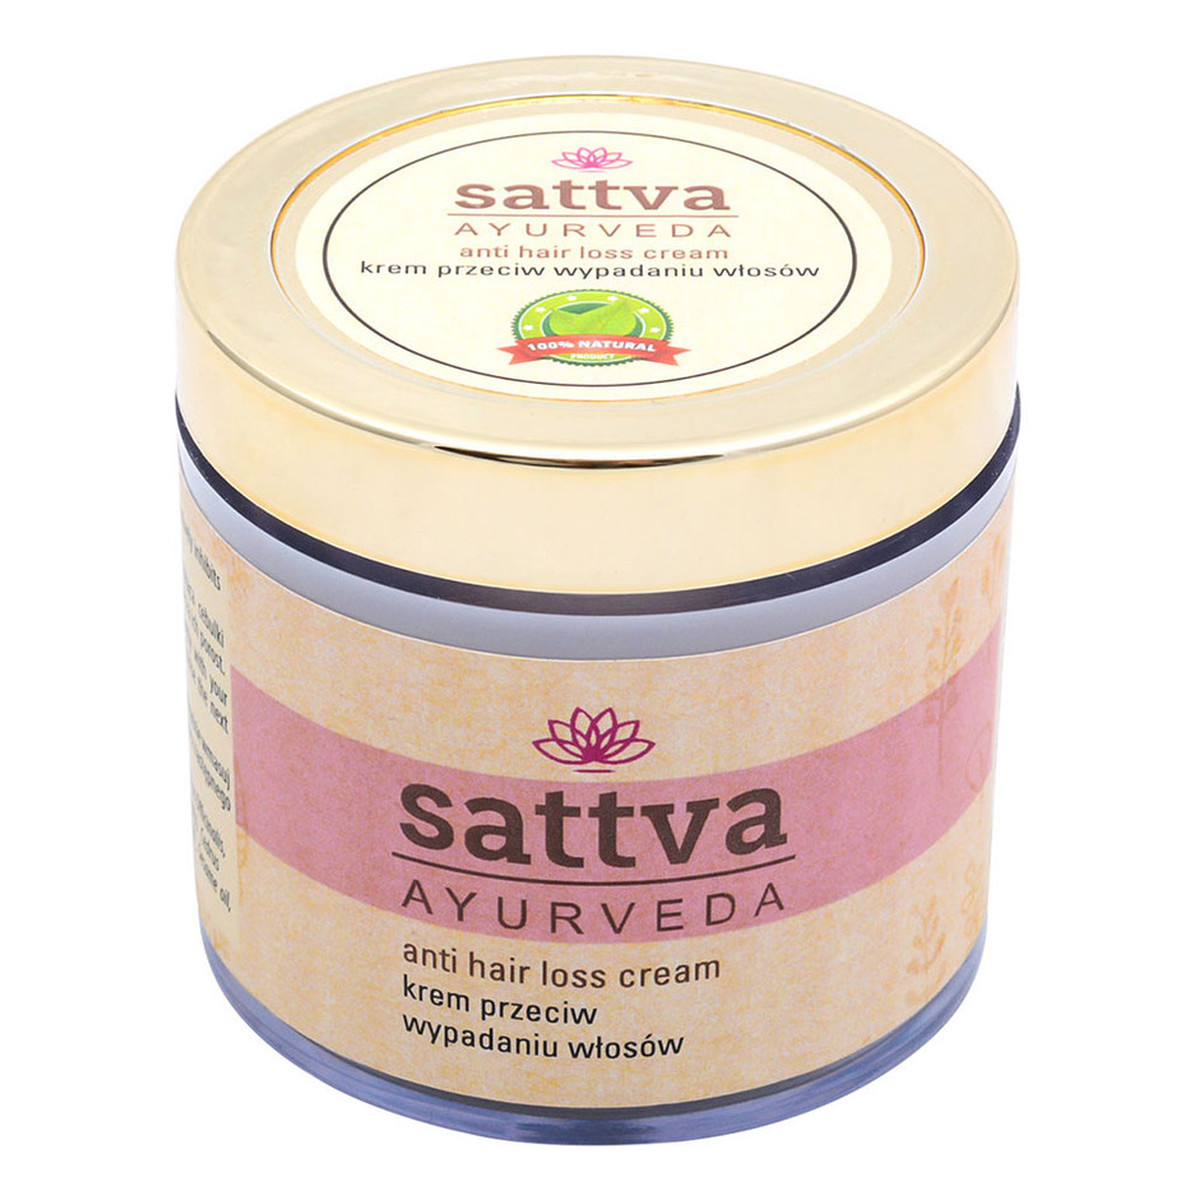 Sattva Ayurveda Anti Hair Loss Cream Krem przeciw wypadaniu włosów 100g